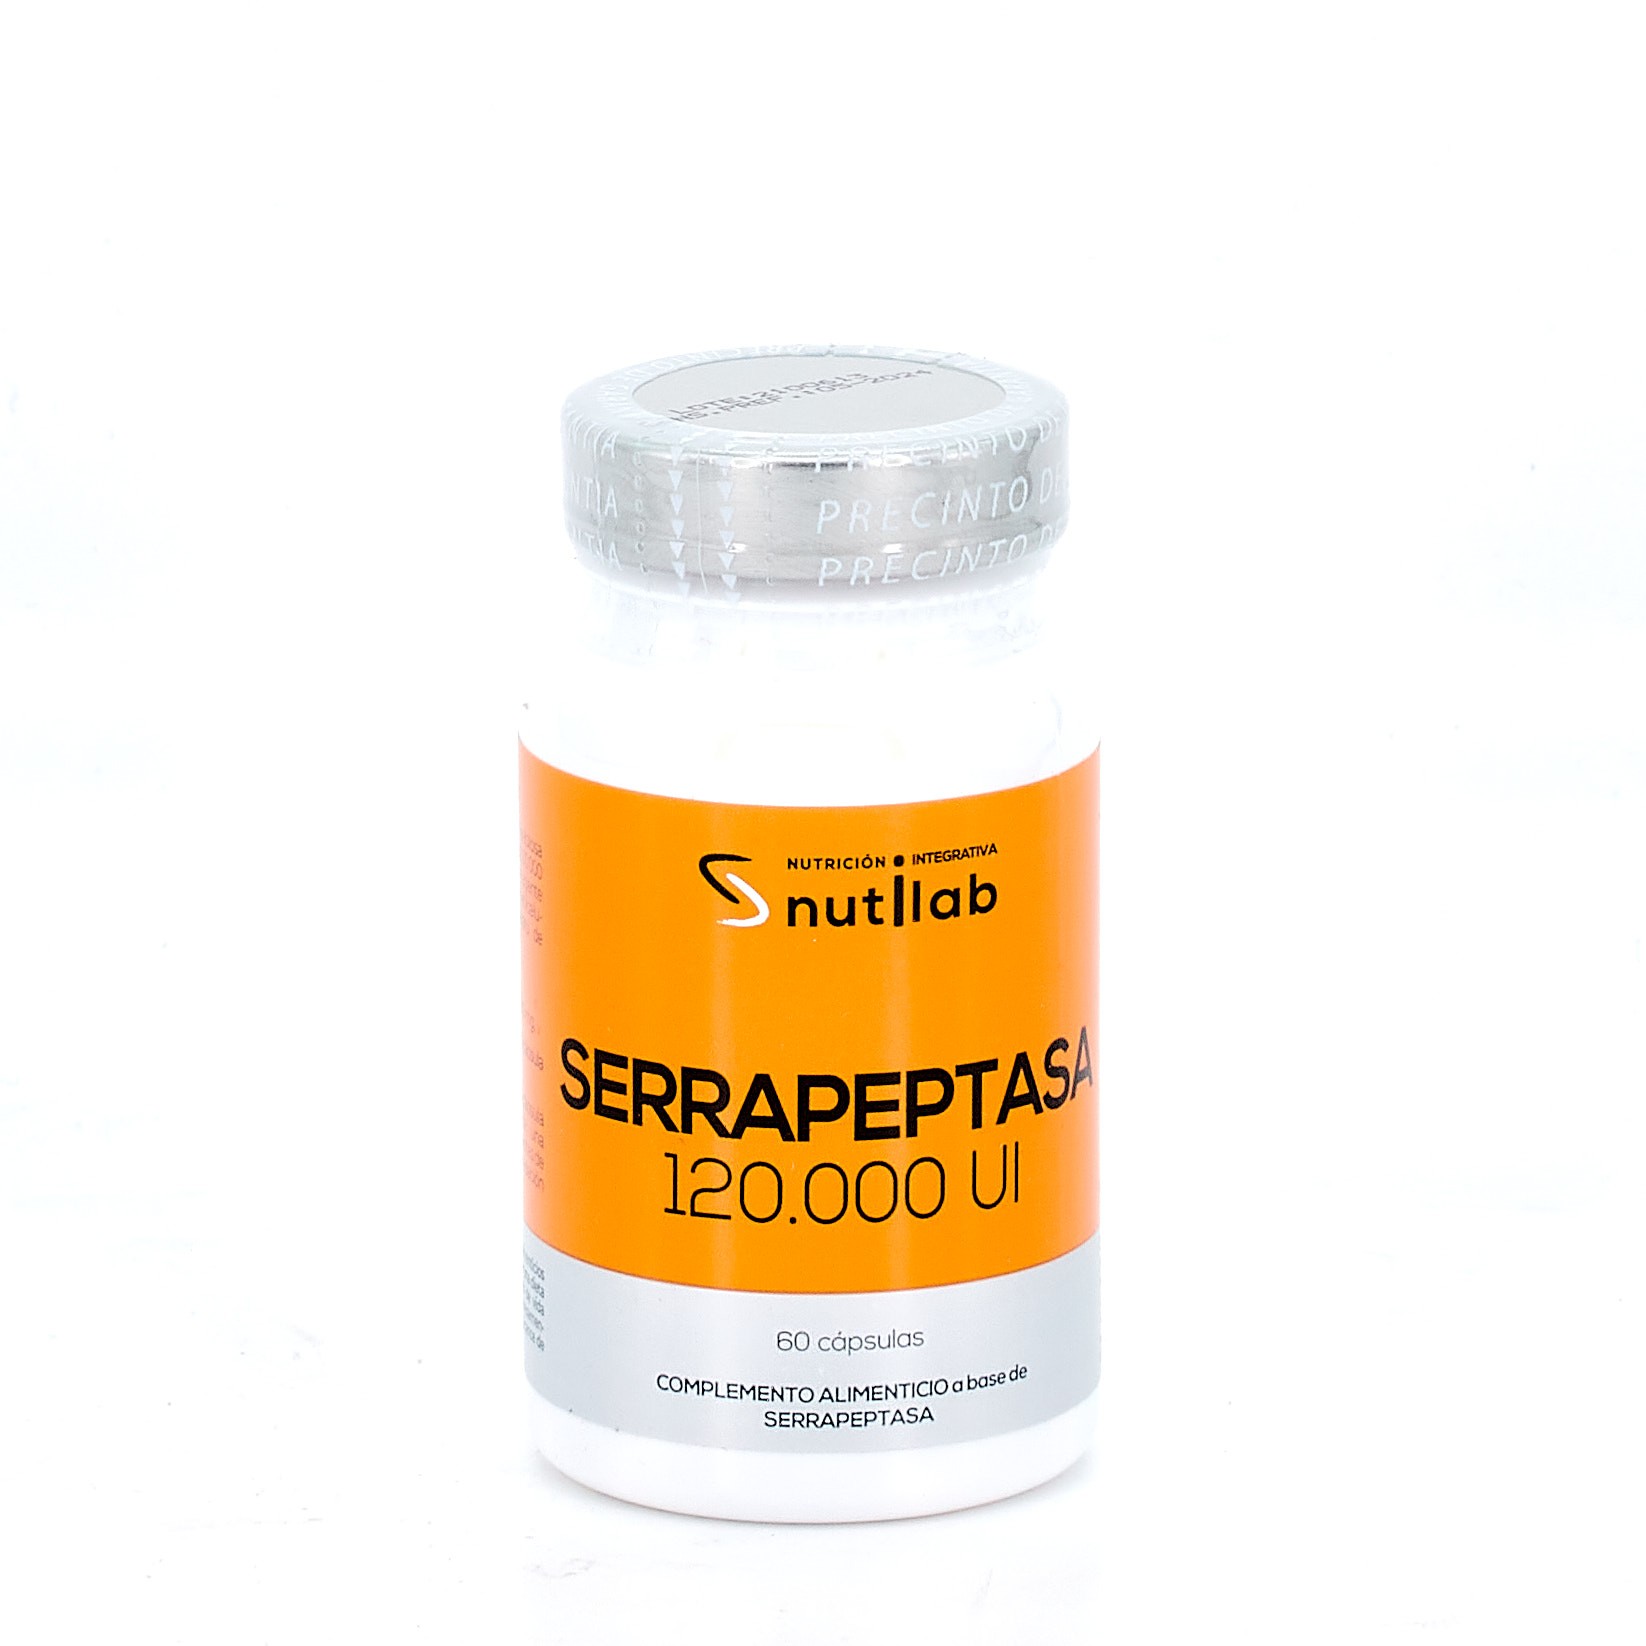 Nutilab Serrapeptase, 60 cápsulas